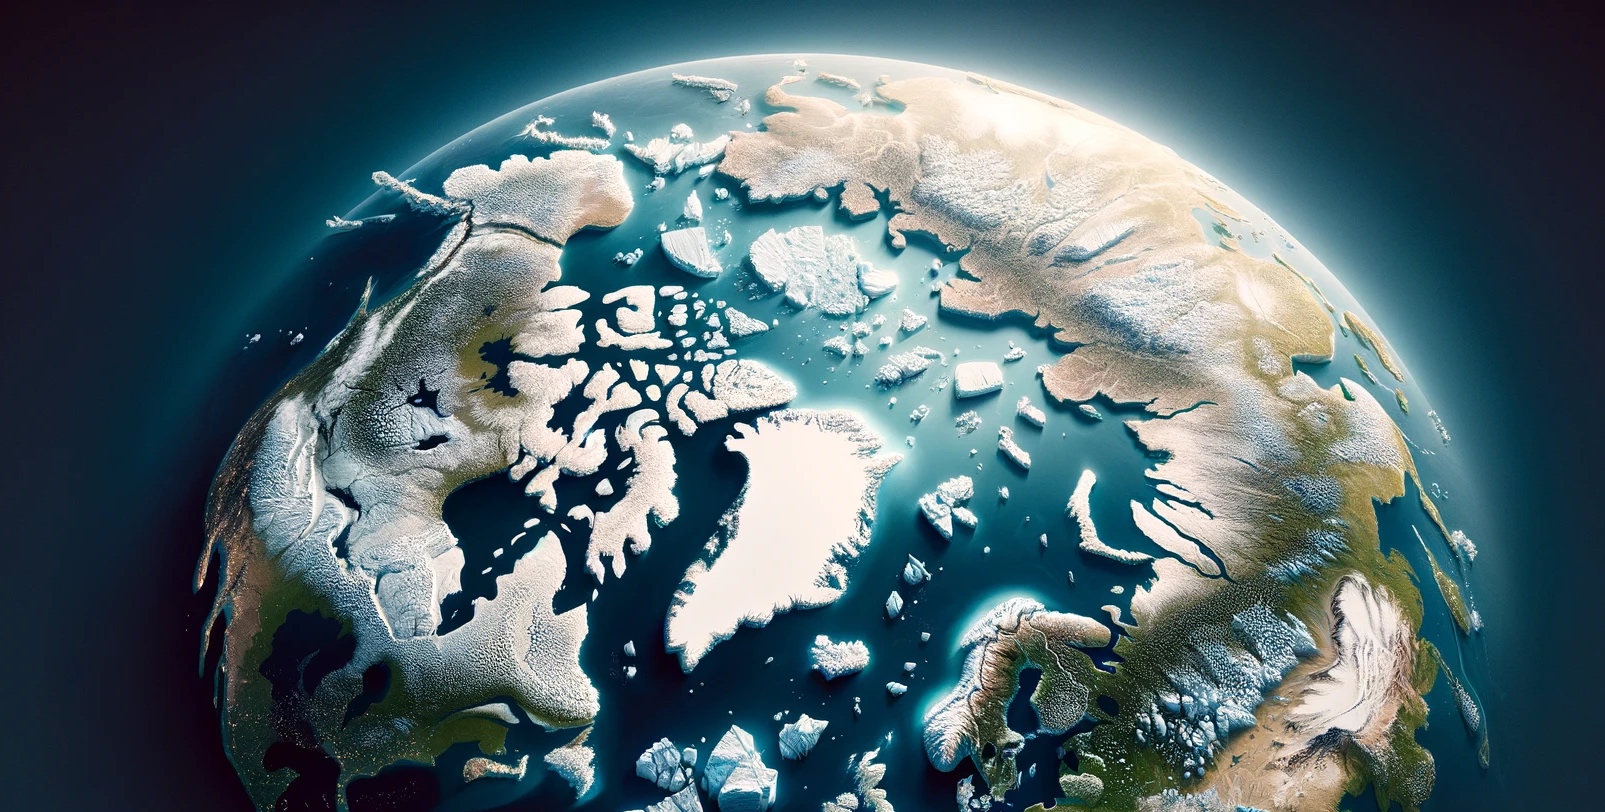 La glace de mer présente l'été en Arctique pourrait disparaître dans 10 ans. © XD, Futura avec DALL-E